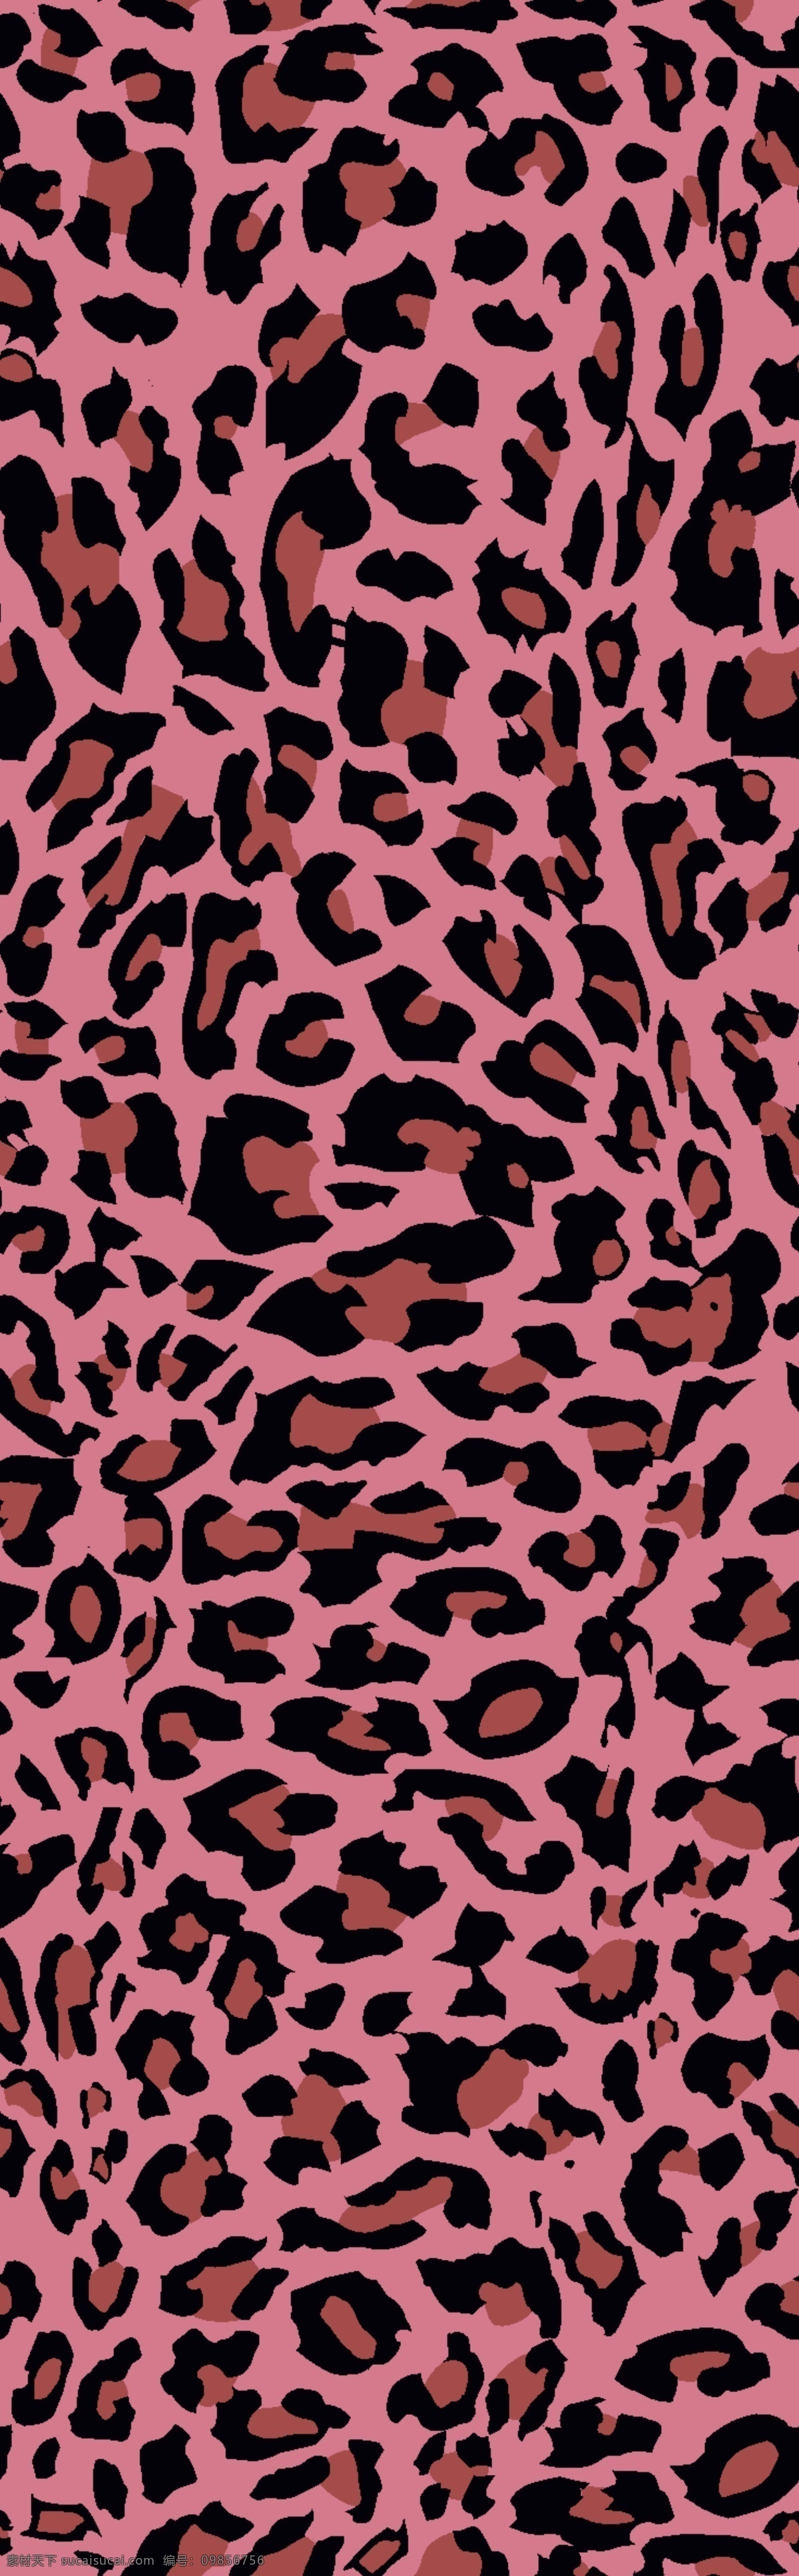 豹纹图片 豹纹 豹纹印花 粉色豹纹 时尚 经典 数码印花 印花 女装 3d设计 3d作品